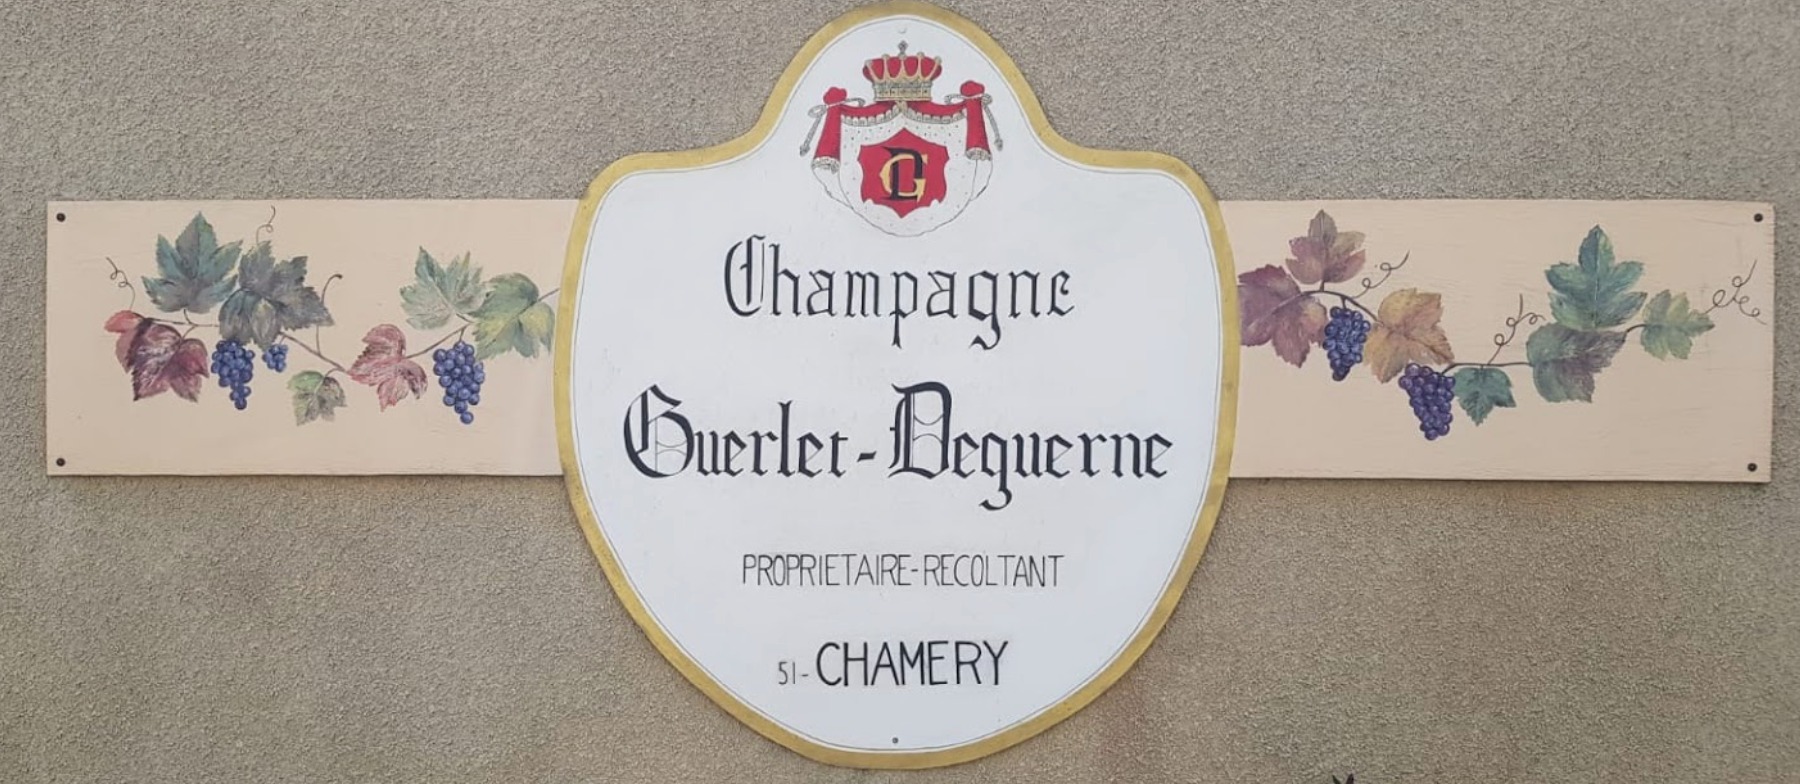 Champagne Guerlet Deguerne